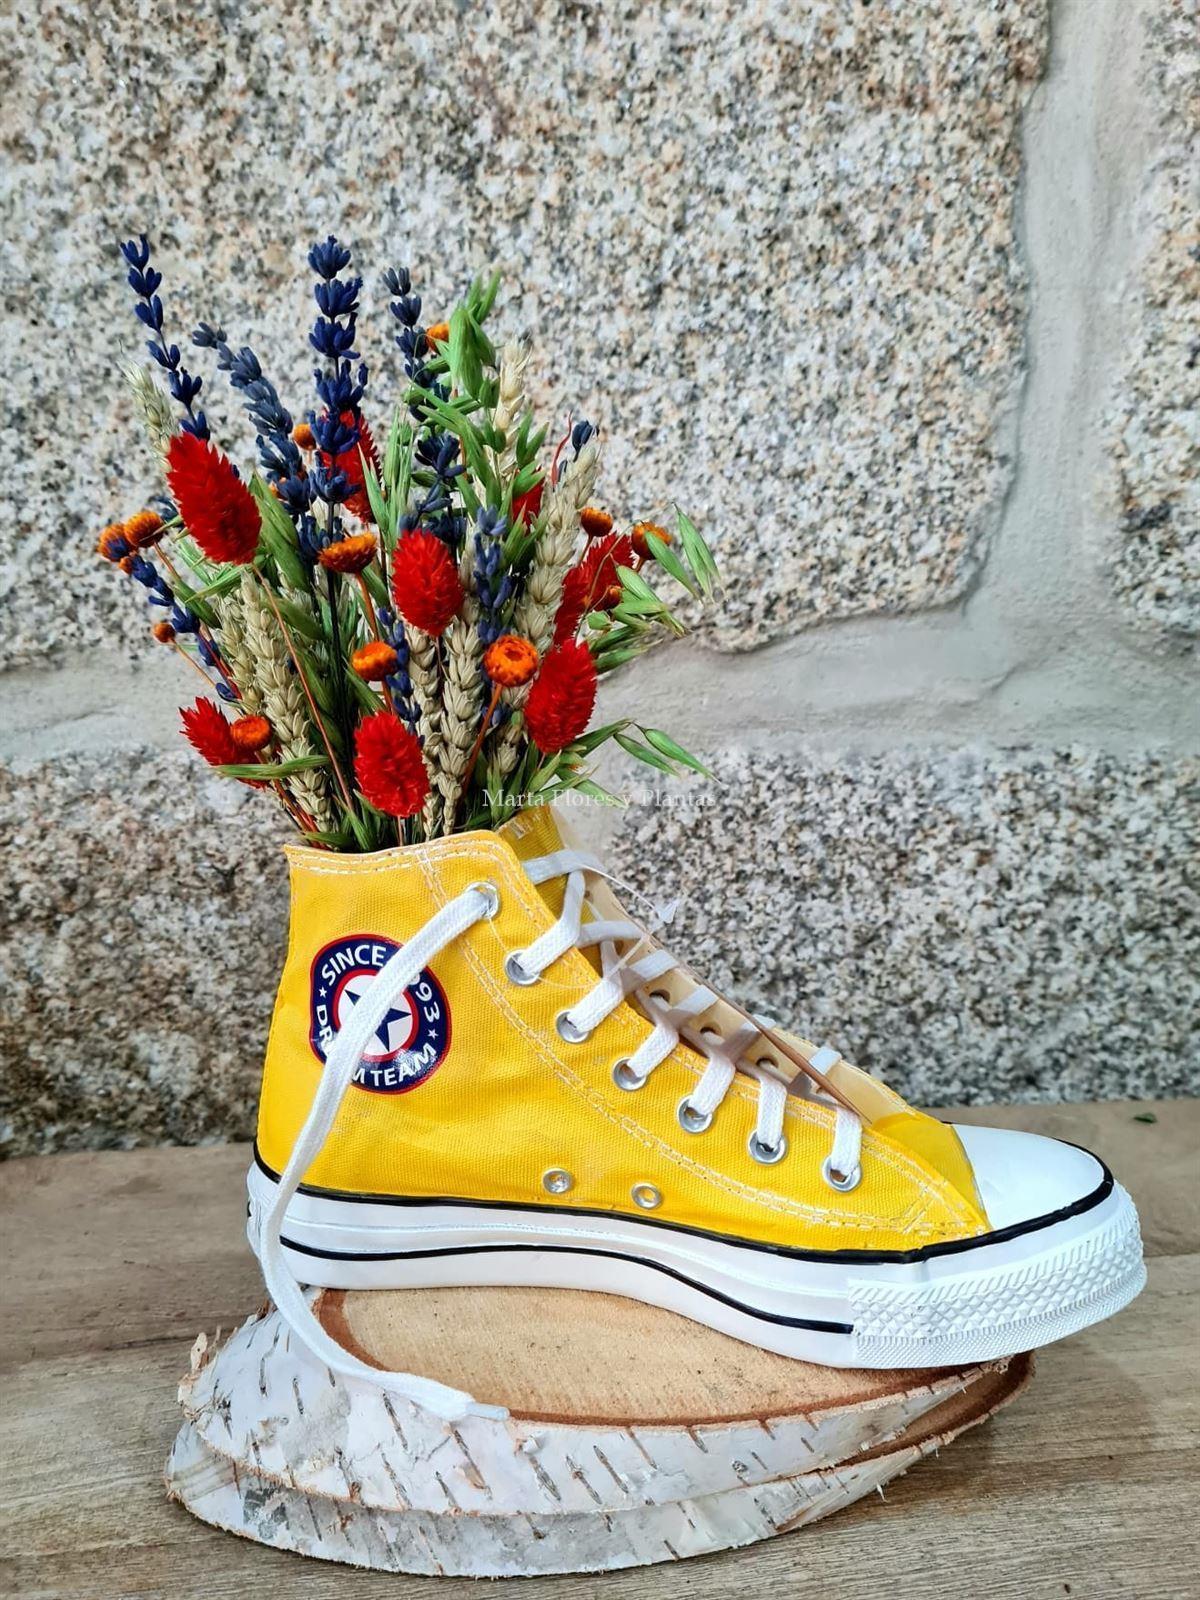 Zapatillas Convers con flor seca - Imagen 7